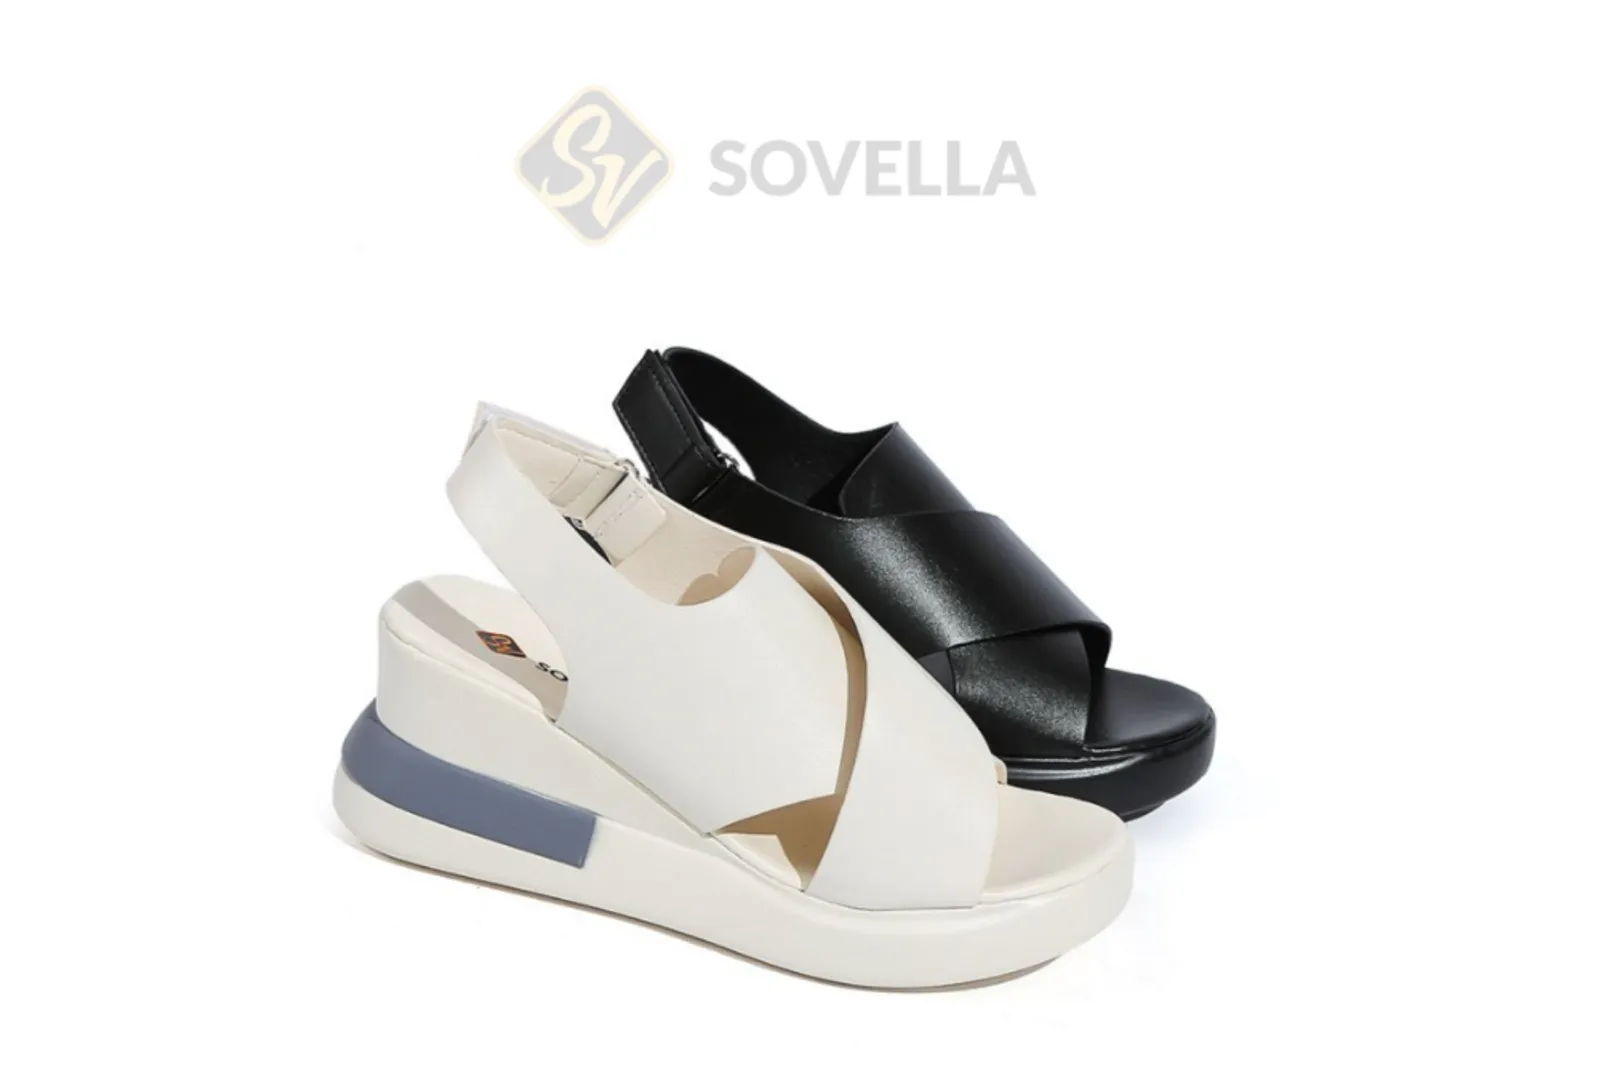 5 Sepatu Sovella Terbaru yang Trendi dan Kekinian